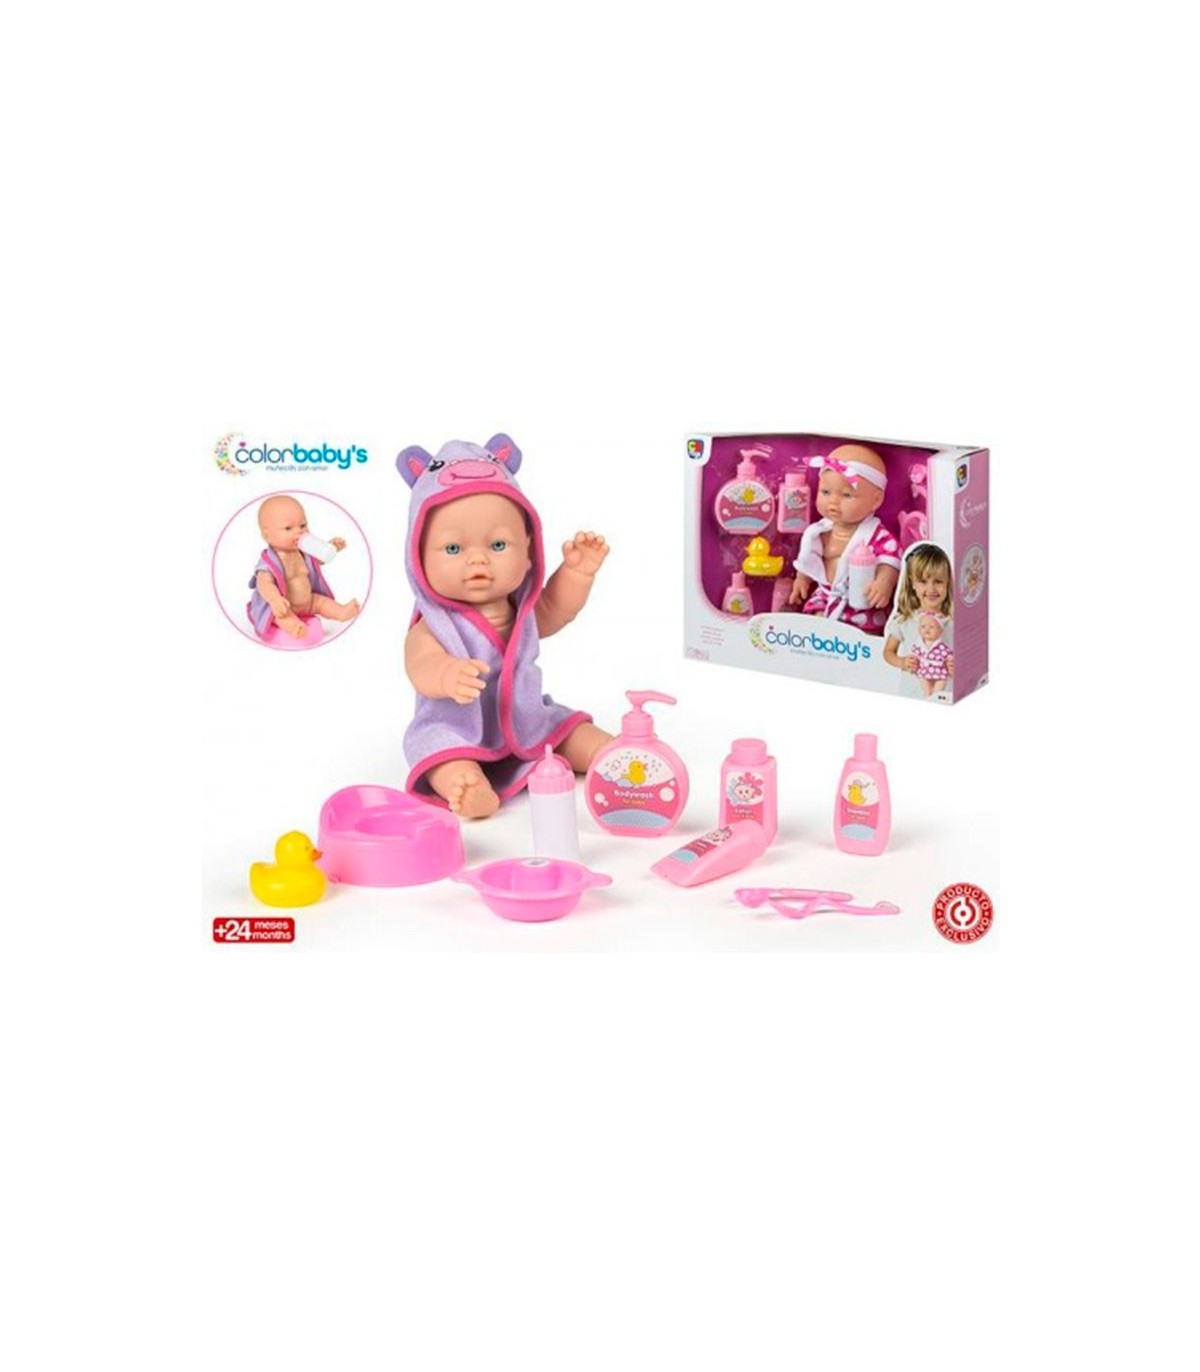 Accesorios bebés juguete Colorbaby's